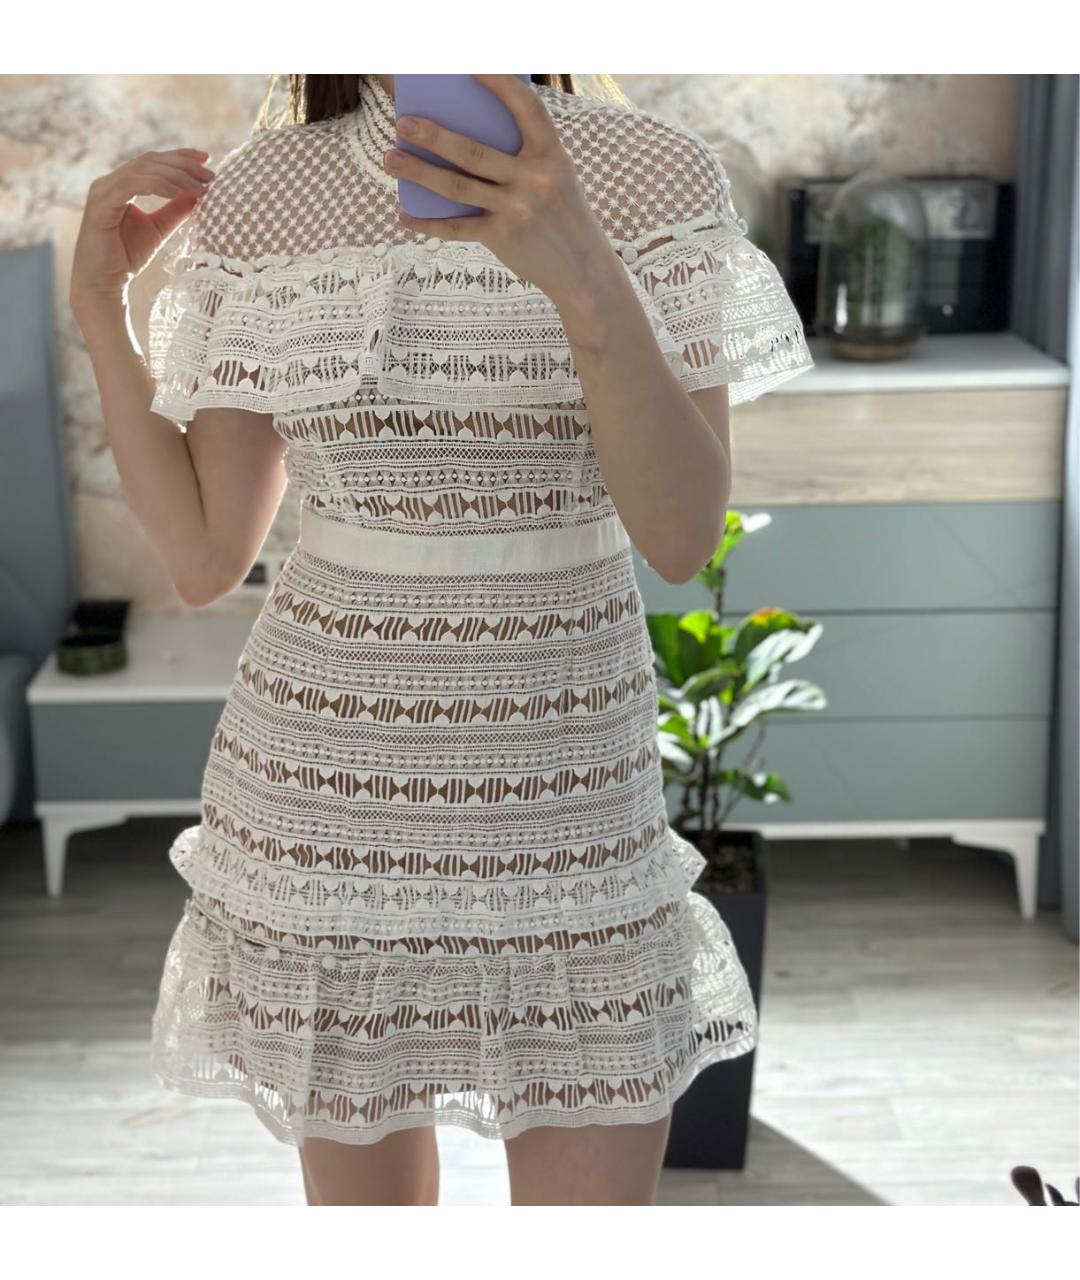 SELF-PORTRAIT Белое полиэстеровое коктейльное платье, фото 5